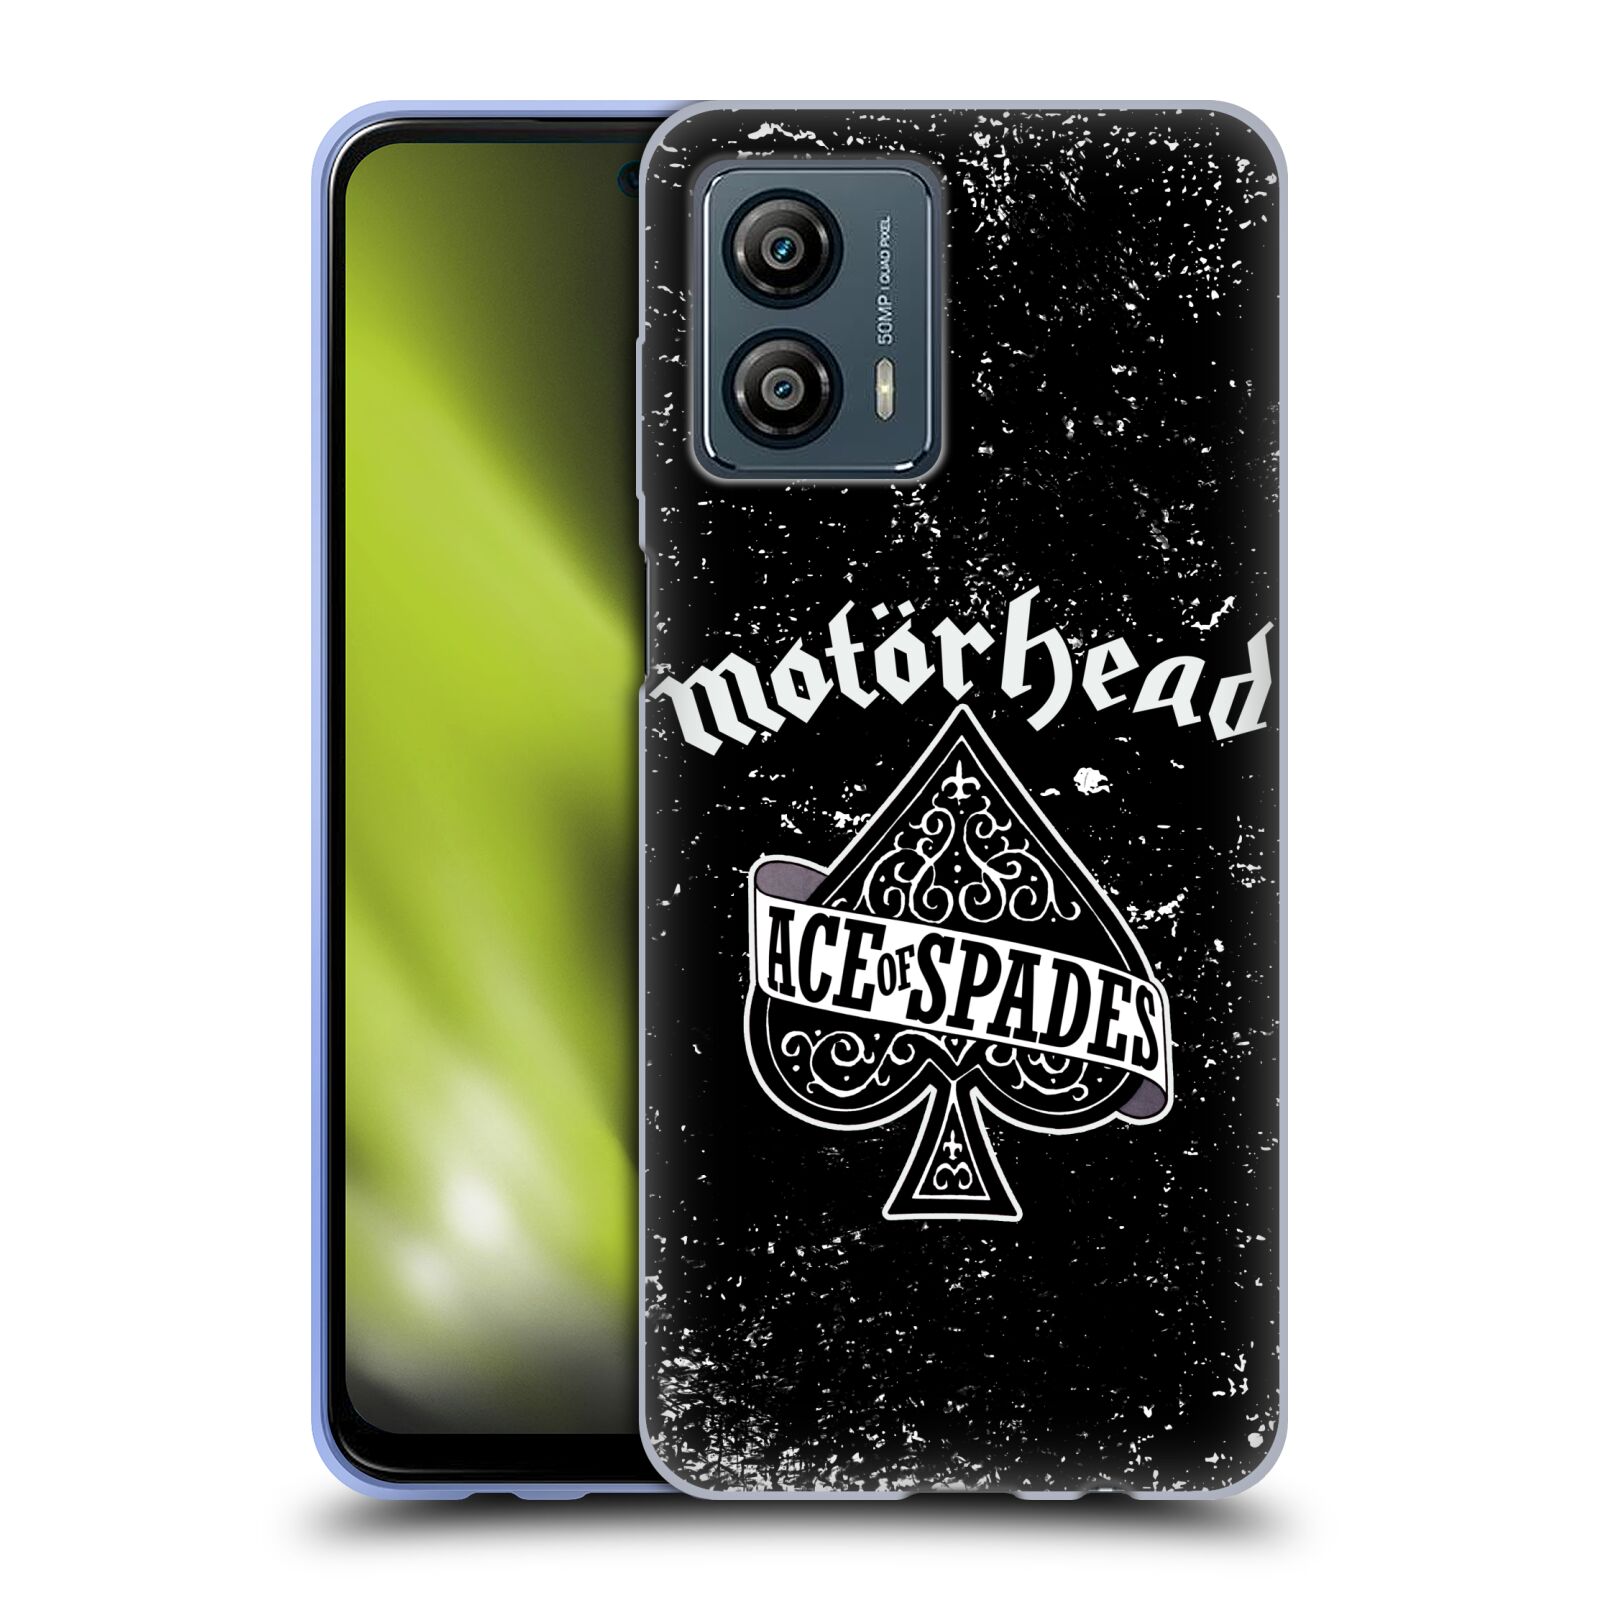 Silikonové pouzdro na mobil Motorola Moto G53 5G - Motörhead - Ace Of Spades (Silikonový kryt, obal, pouzdro na mobilní telefon Motorola Moto G53 5G s licencovaným motivem Motörhead - Ace Of Spades)